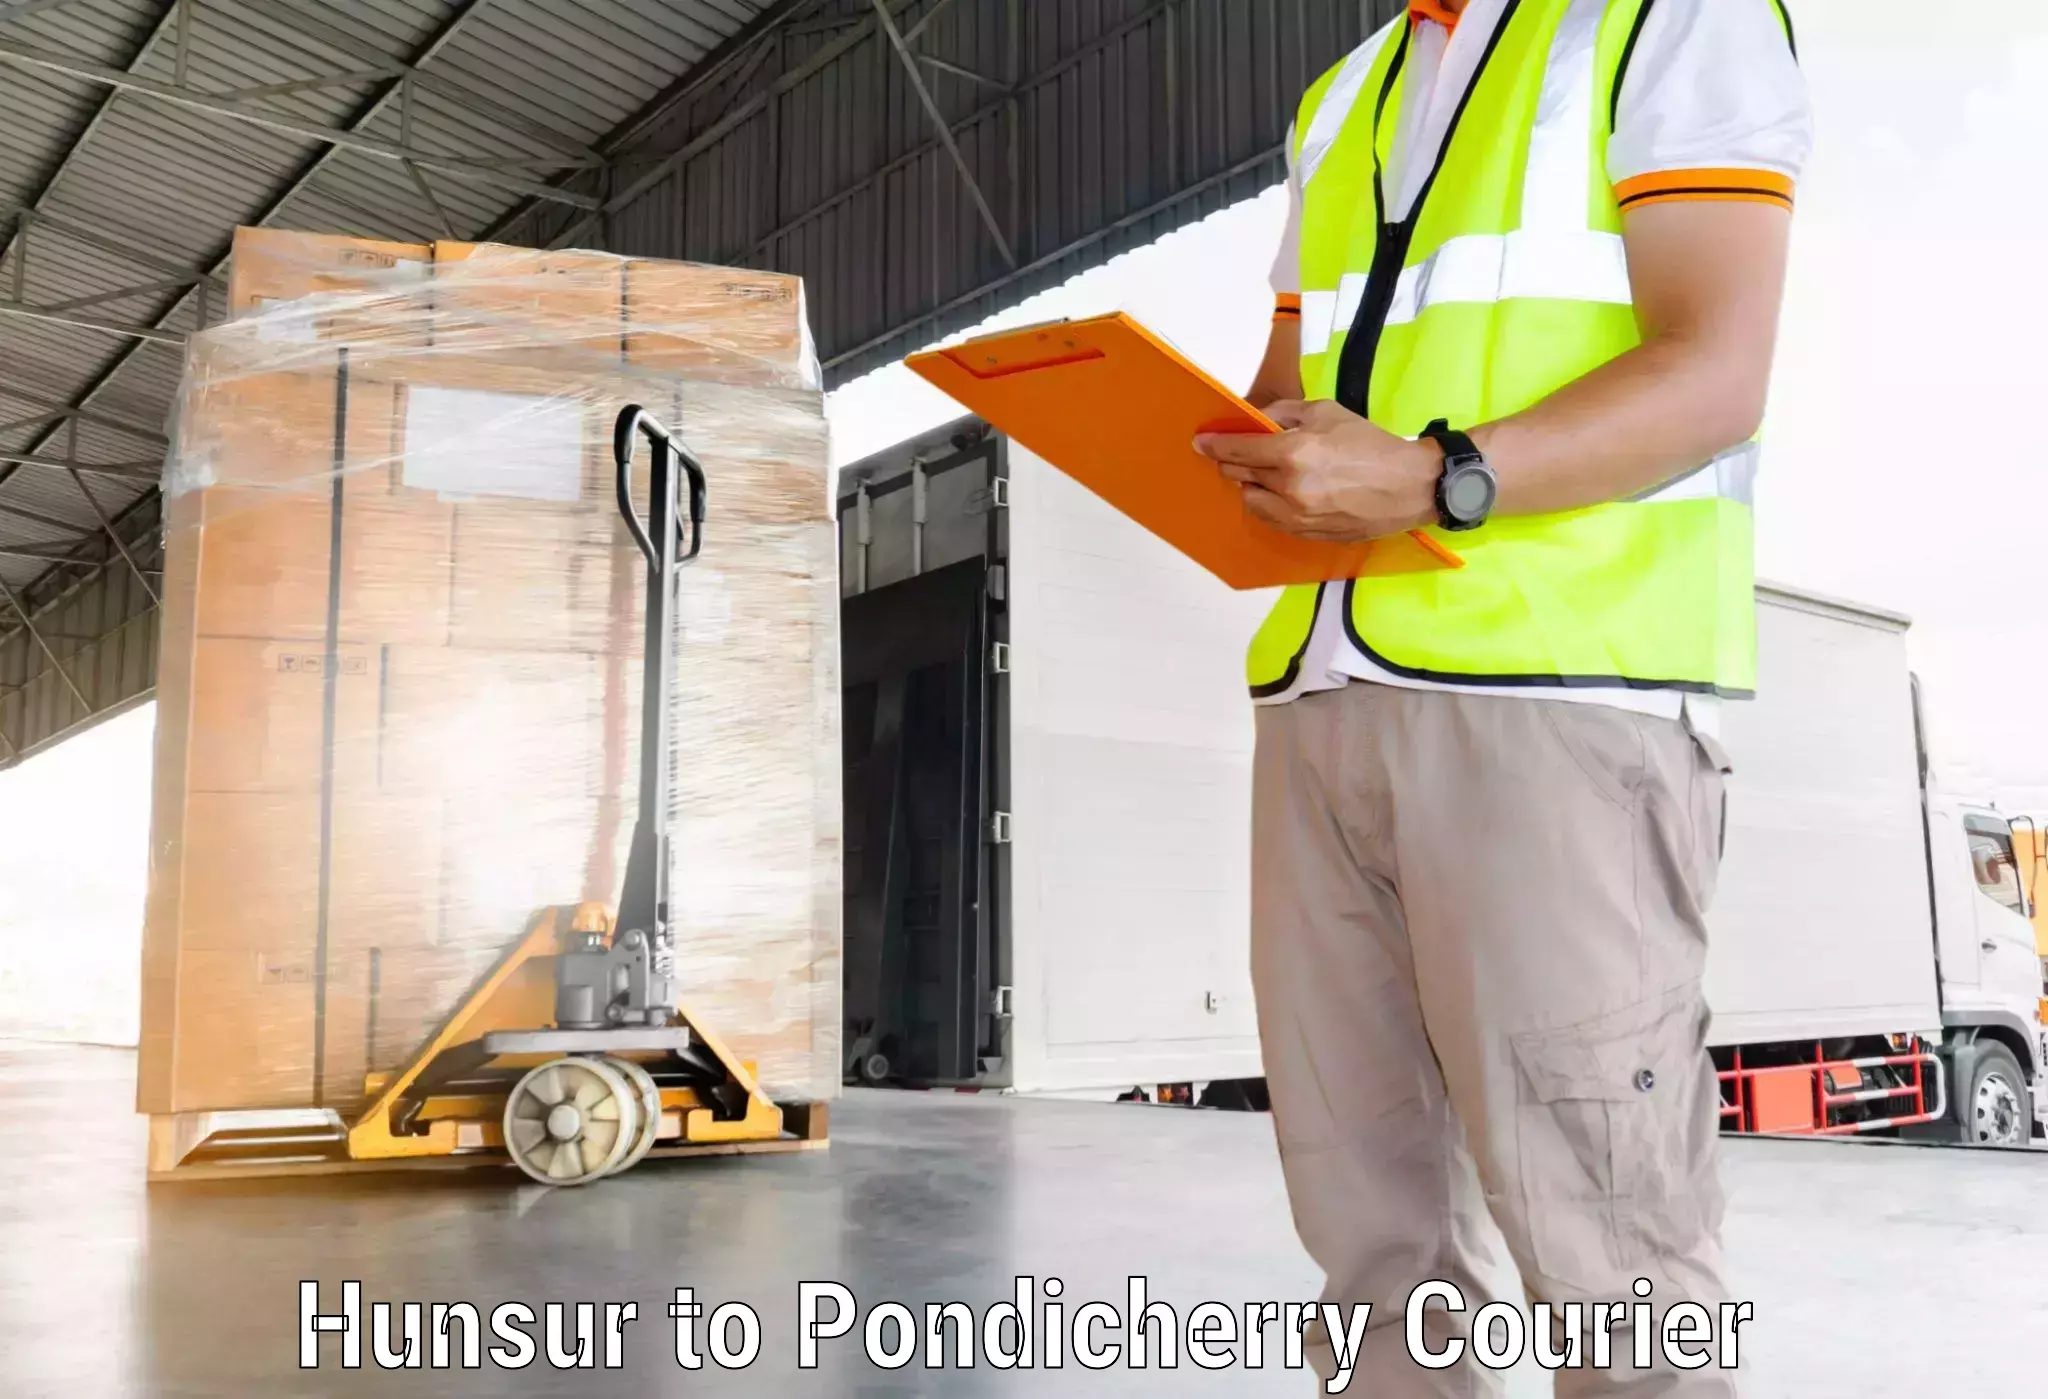 Courier service comparison Hunsur to Pondicherry University